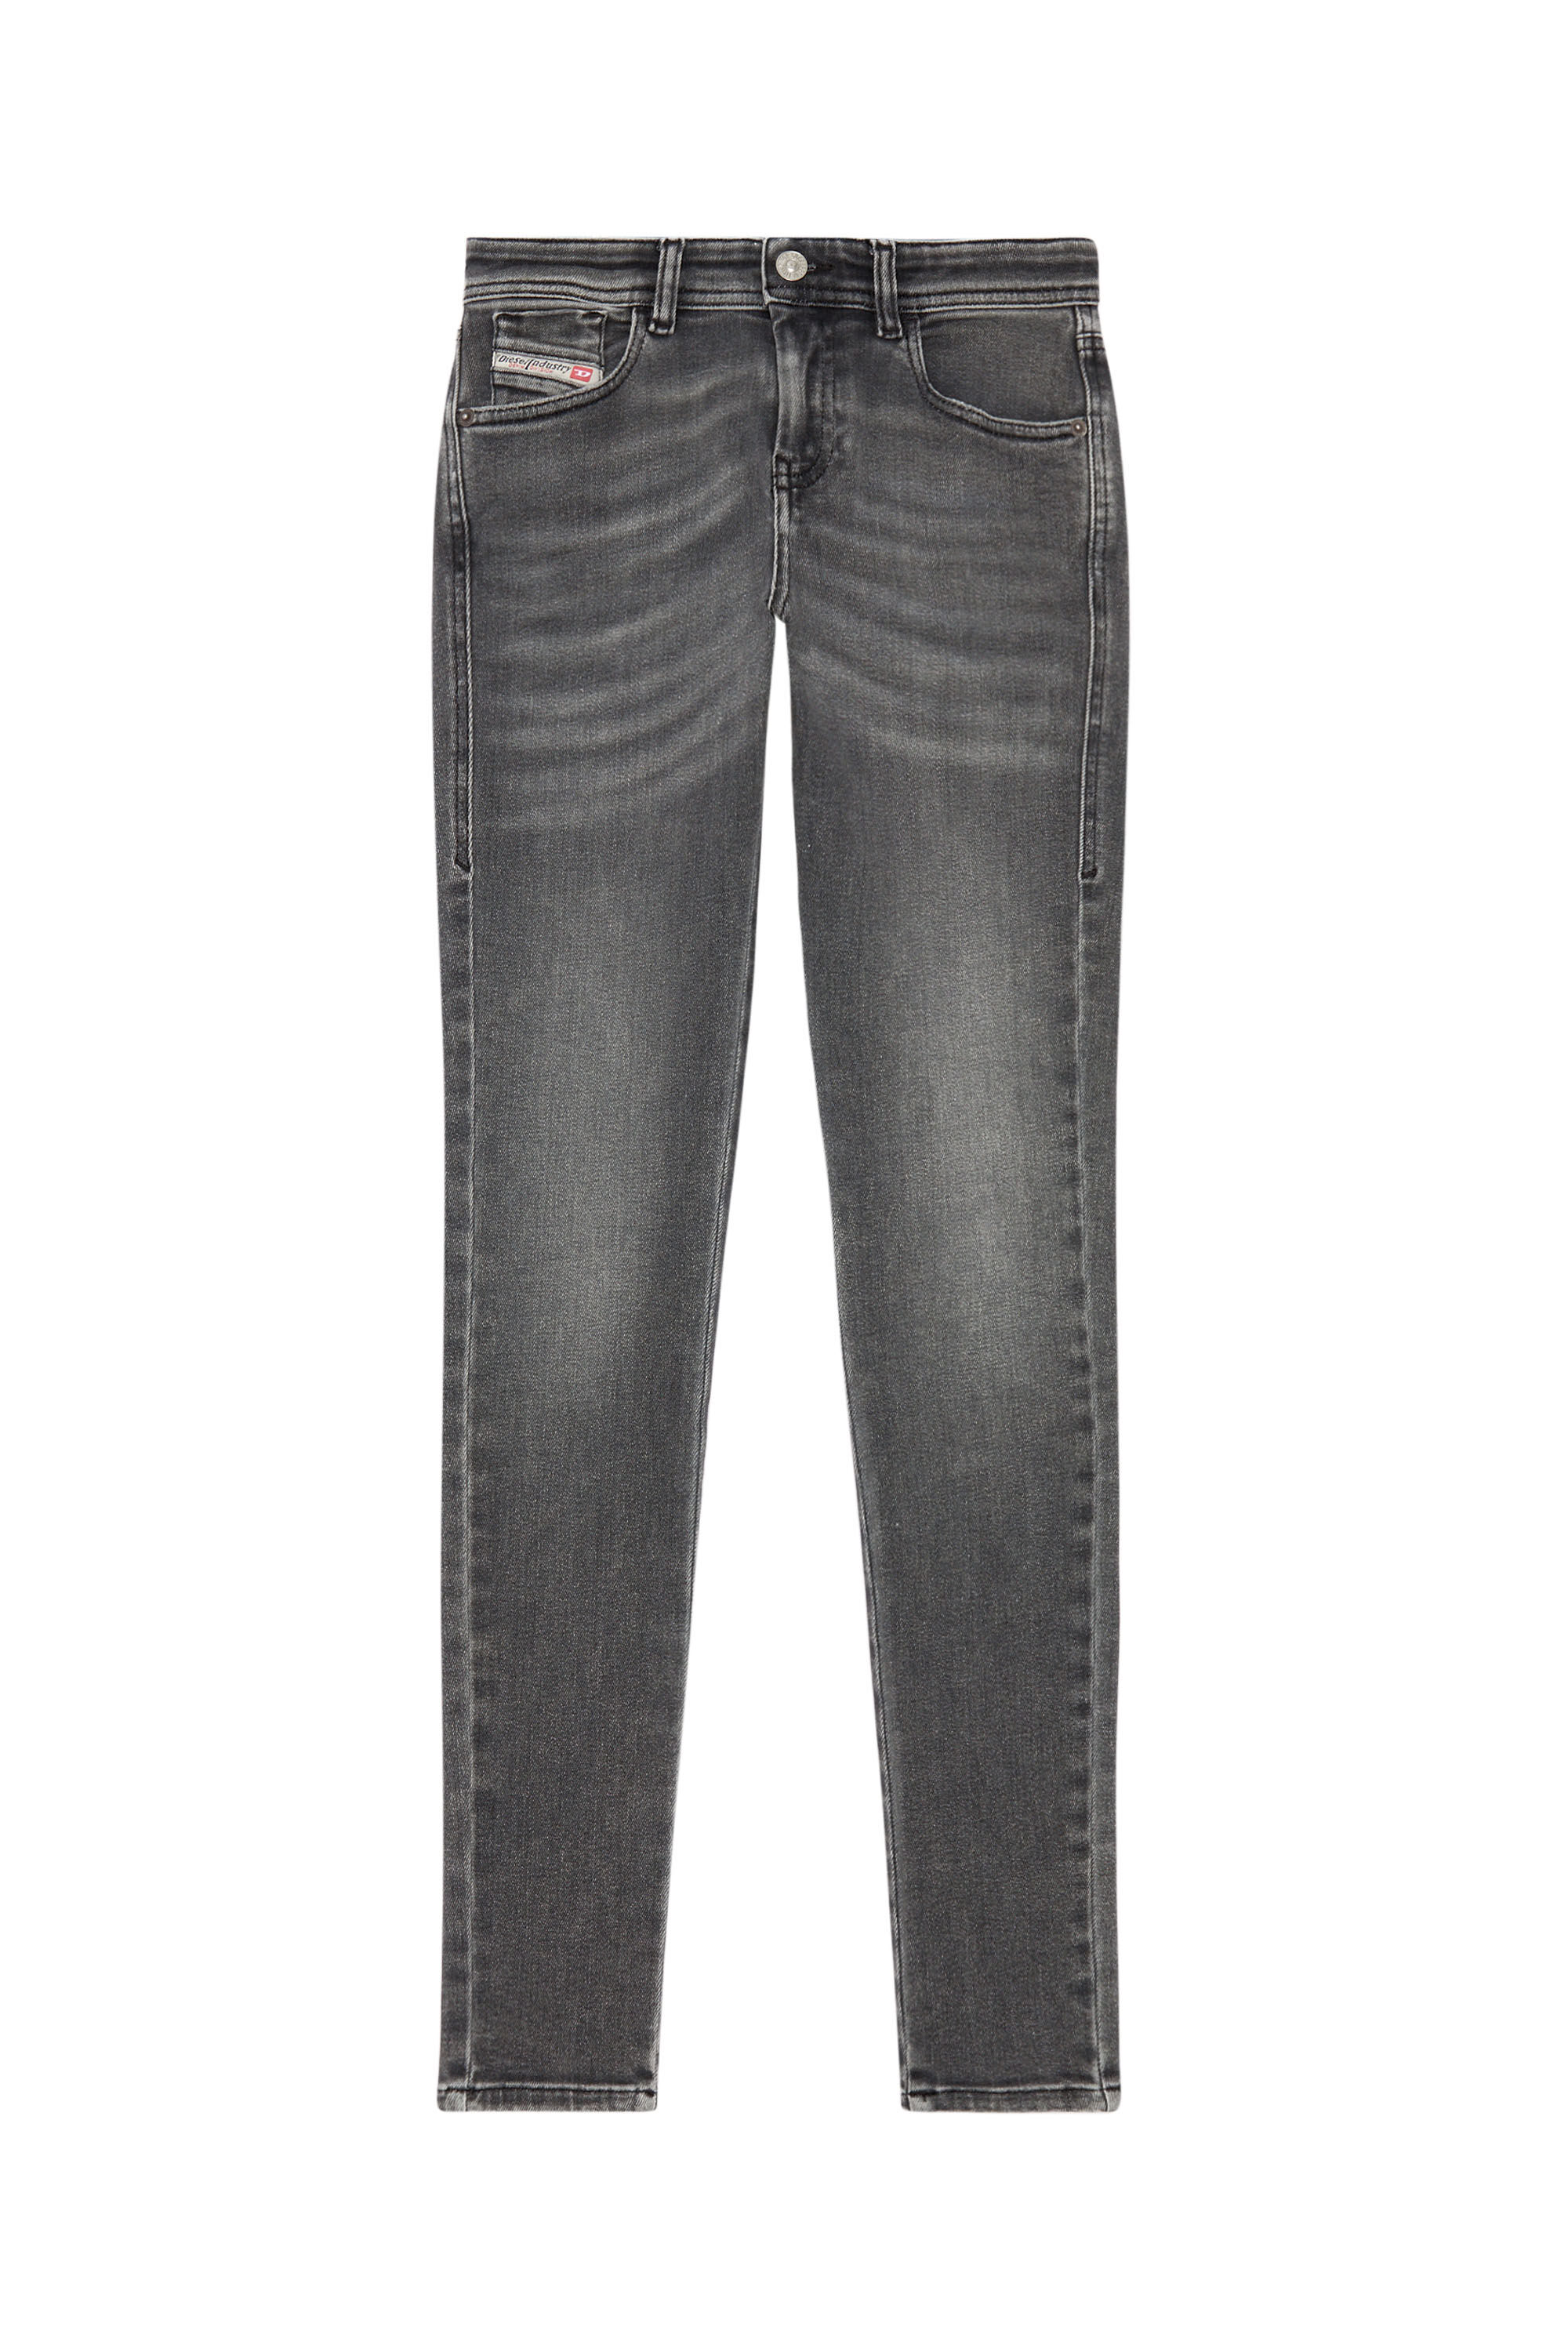 Diesel - Woman Super skinny Jeans 2017 Slandy 09H86, Black/Dark grey - Image 5